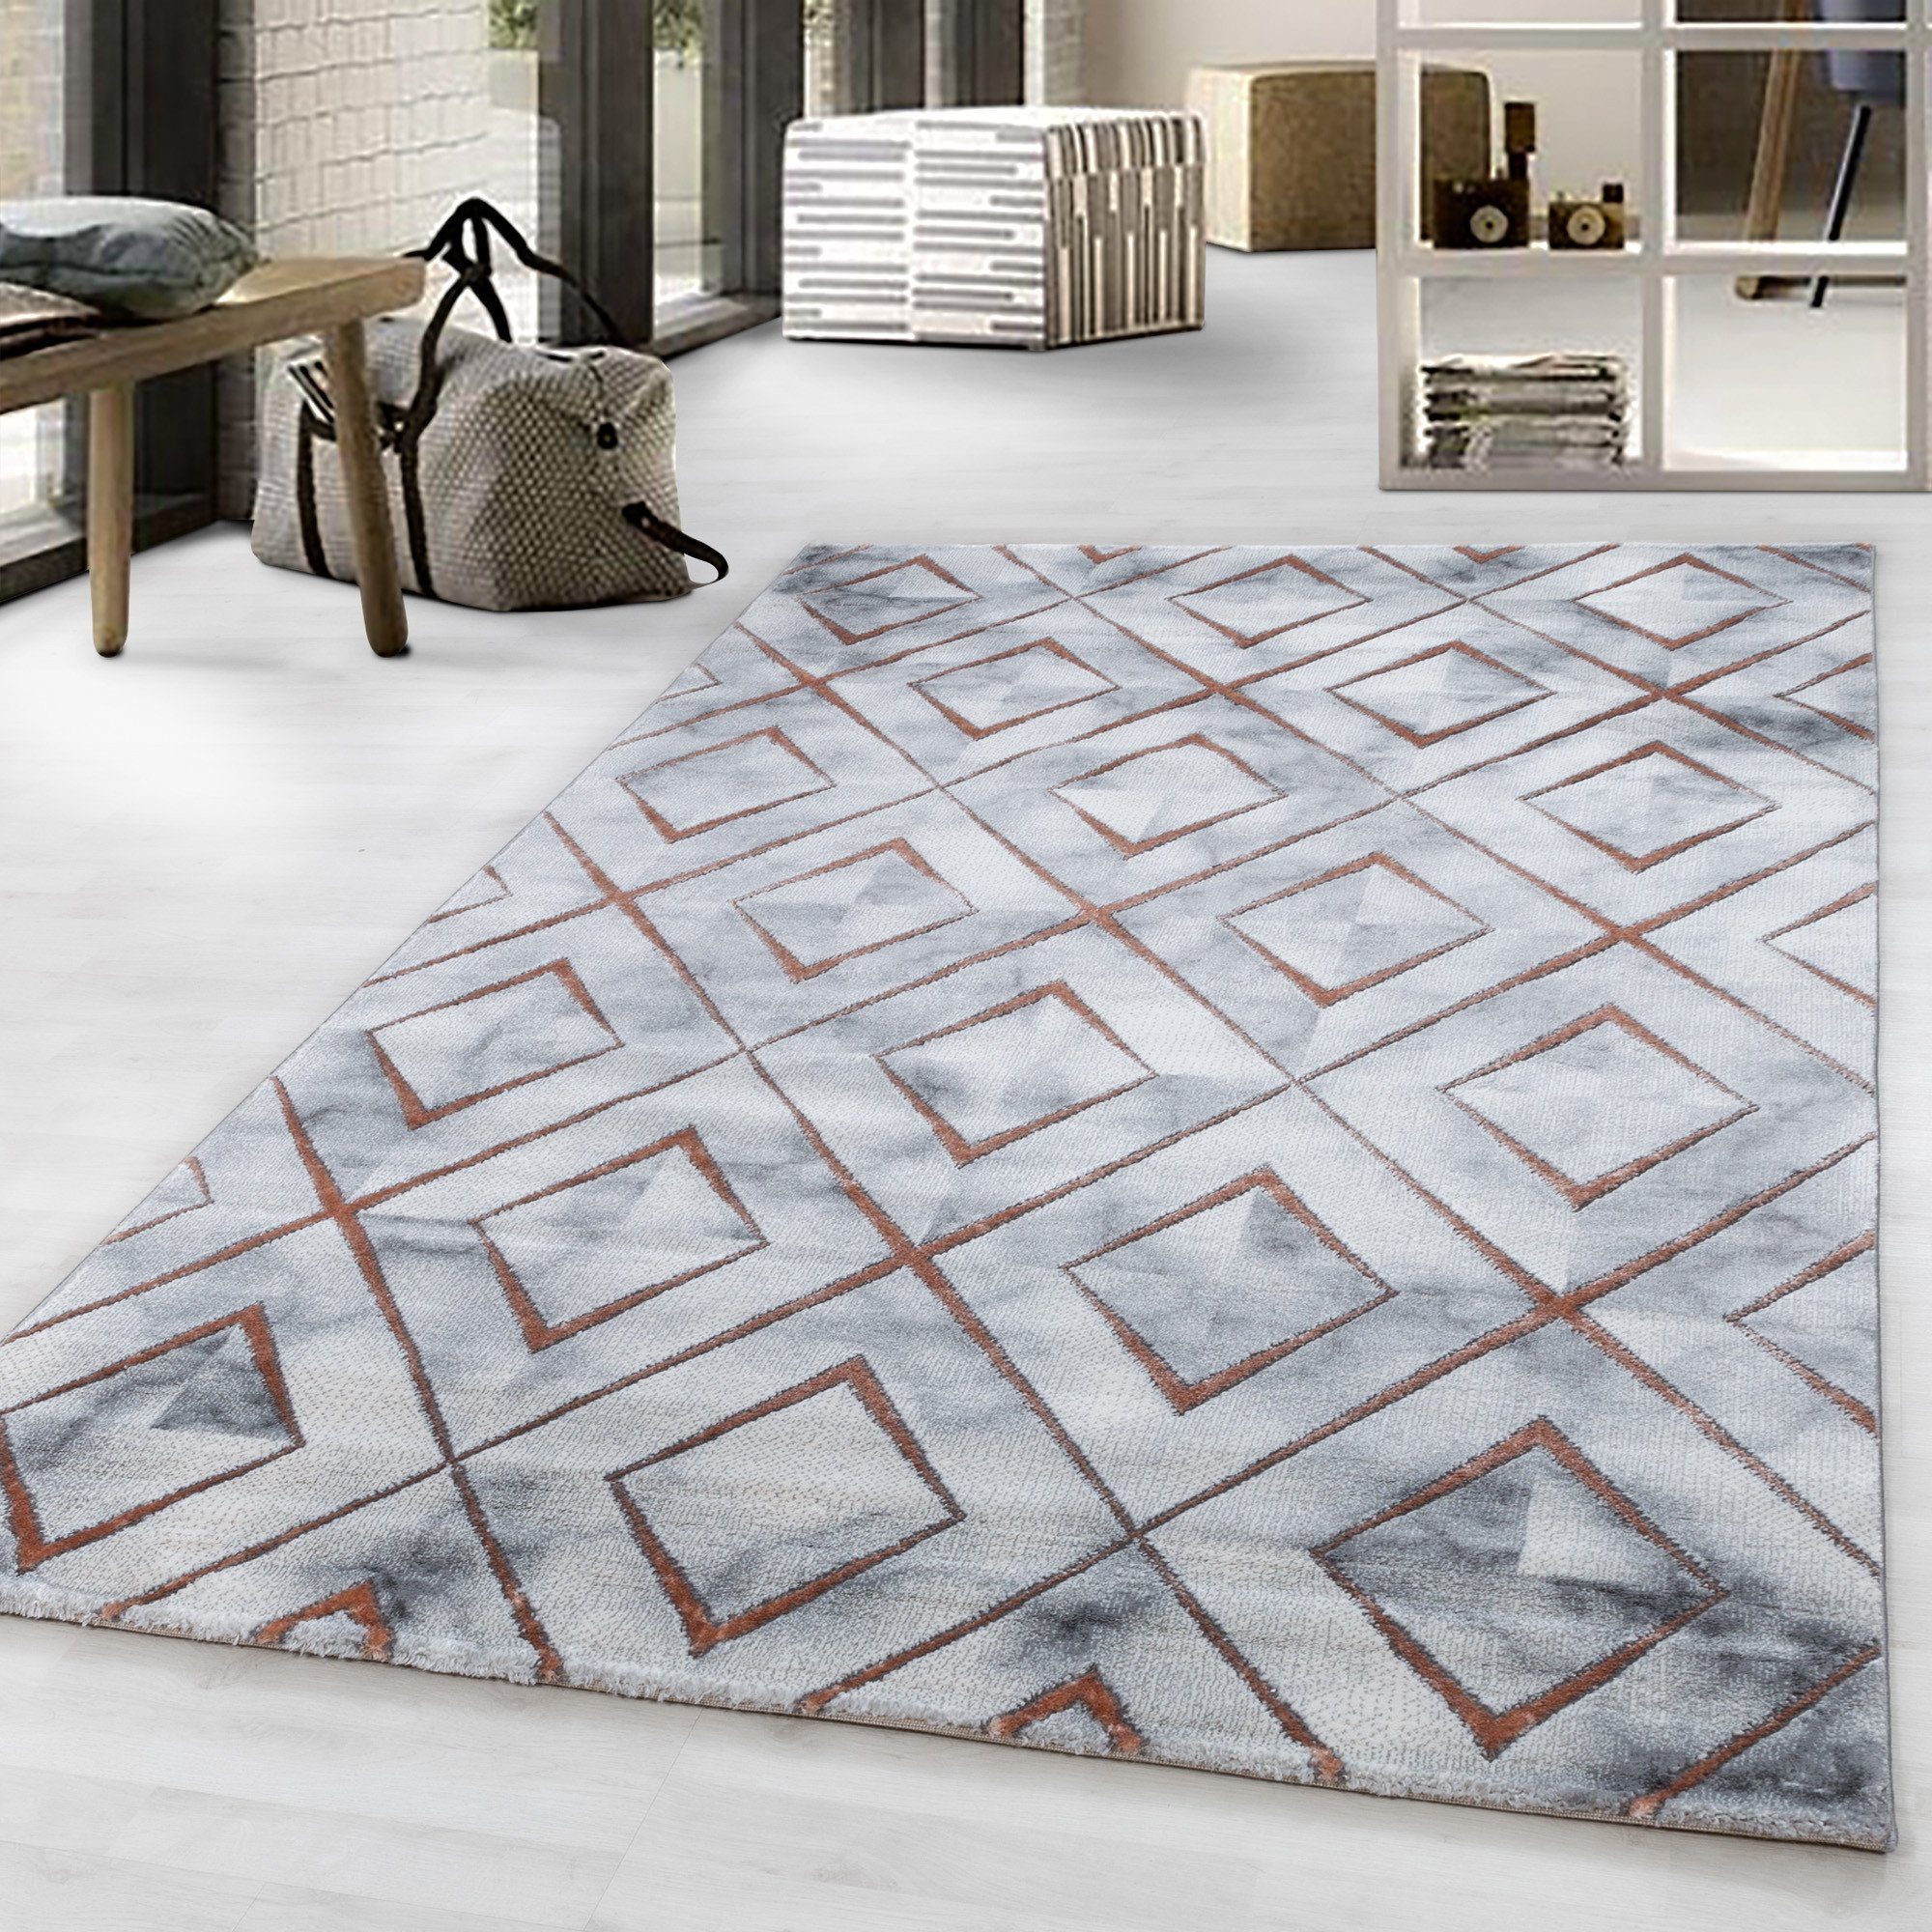 Designteppich Marmoroptik Flachflorteppich Kurzflorteppich Wohnzimmer Muster, Giancasa Bronze | Kinderteppiche